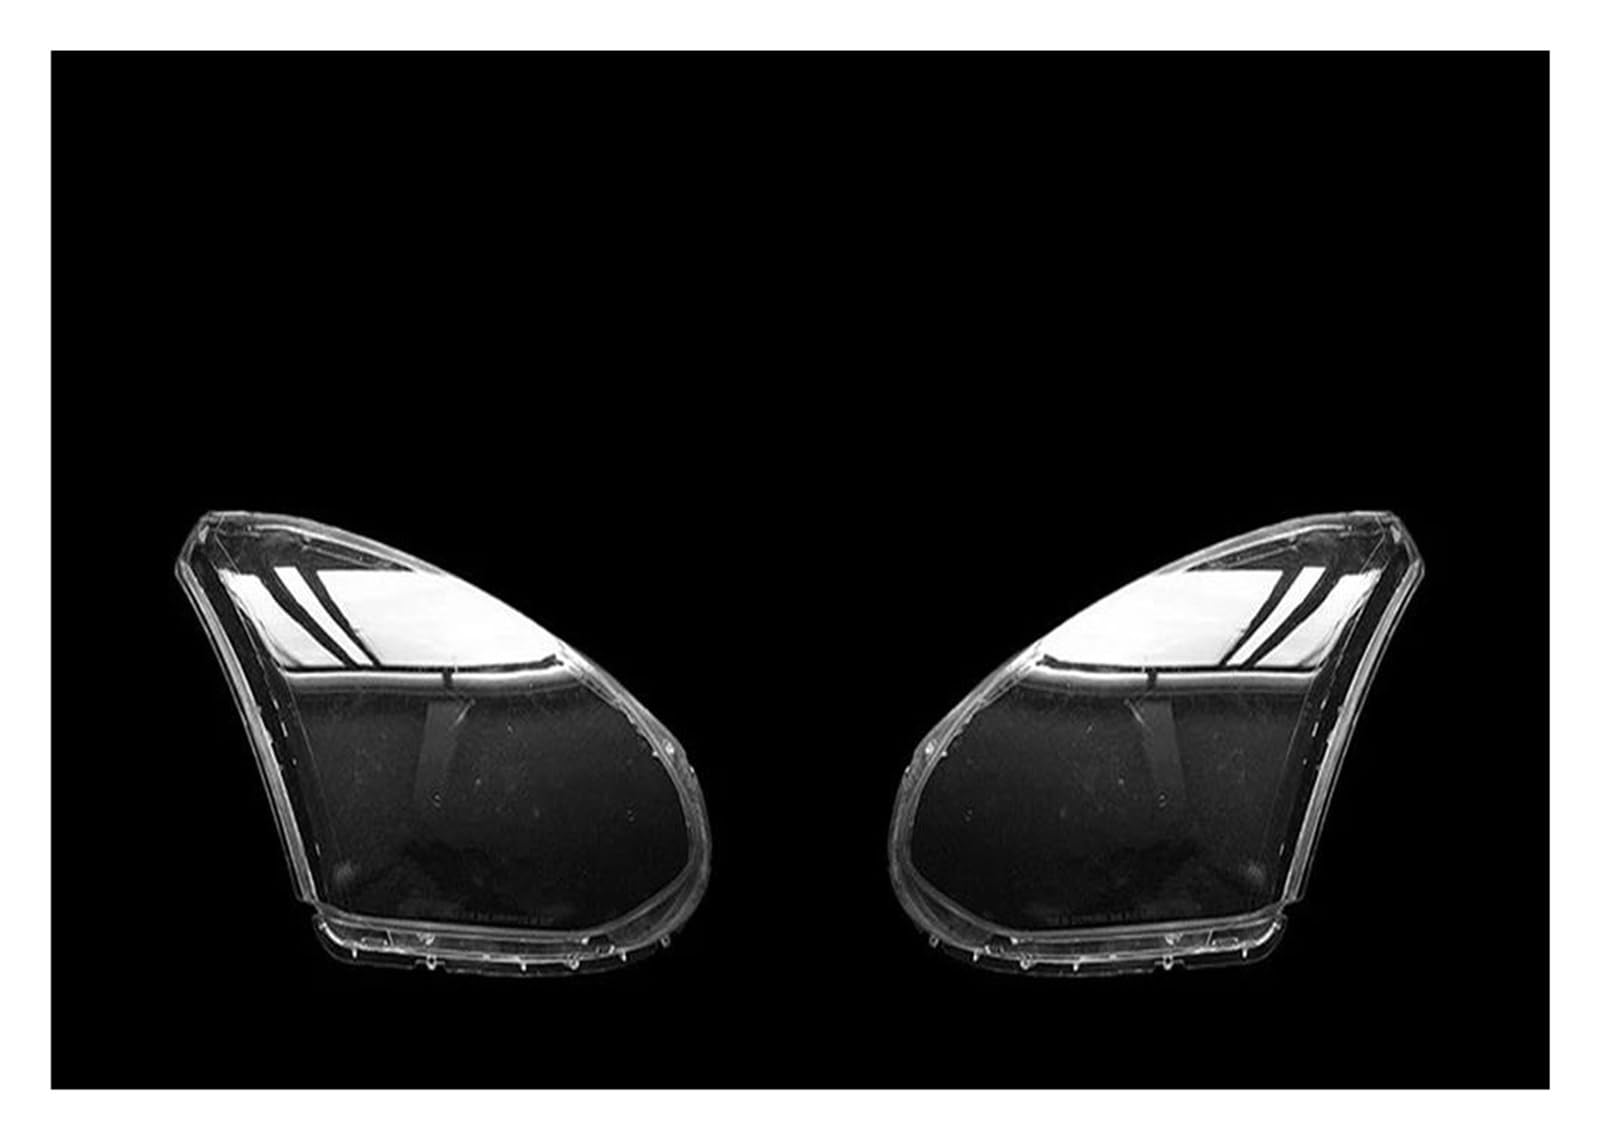 Scheinwerfer Lamp Shell Für Nissan Für Rogue 2008-2013 Auto Front Objektiv Scheinwerfer Transparent Lampenschirm Auto Lampe Shell Lichter Gehäuse Frontscheinwerfer Shell(Left and Right) von XVGUOYAN